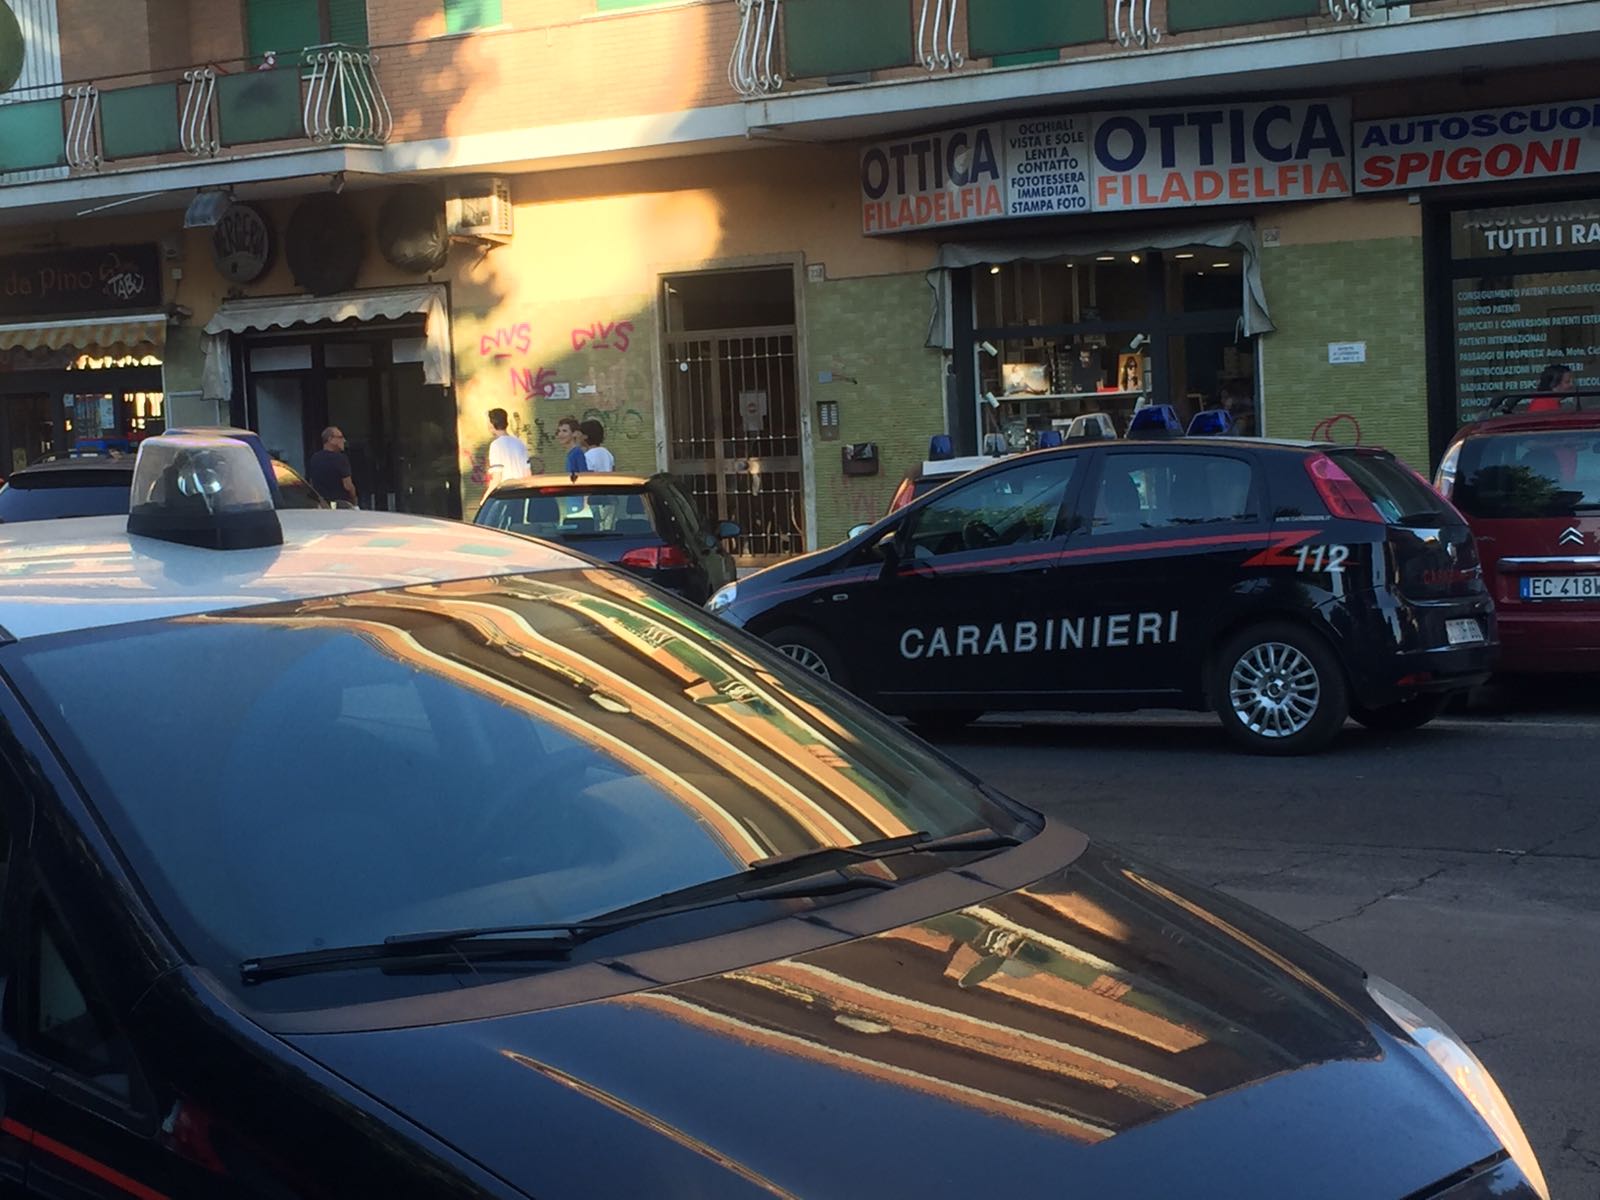 Carabinieri torvaianica intervenuti per l'aggressione di una 14enne alle giostre